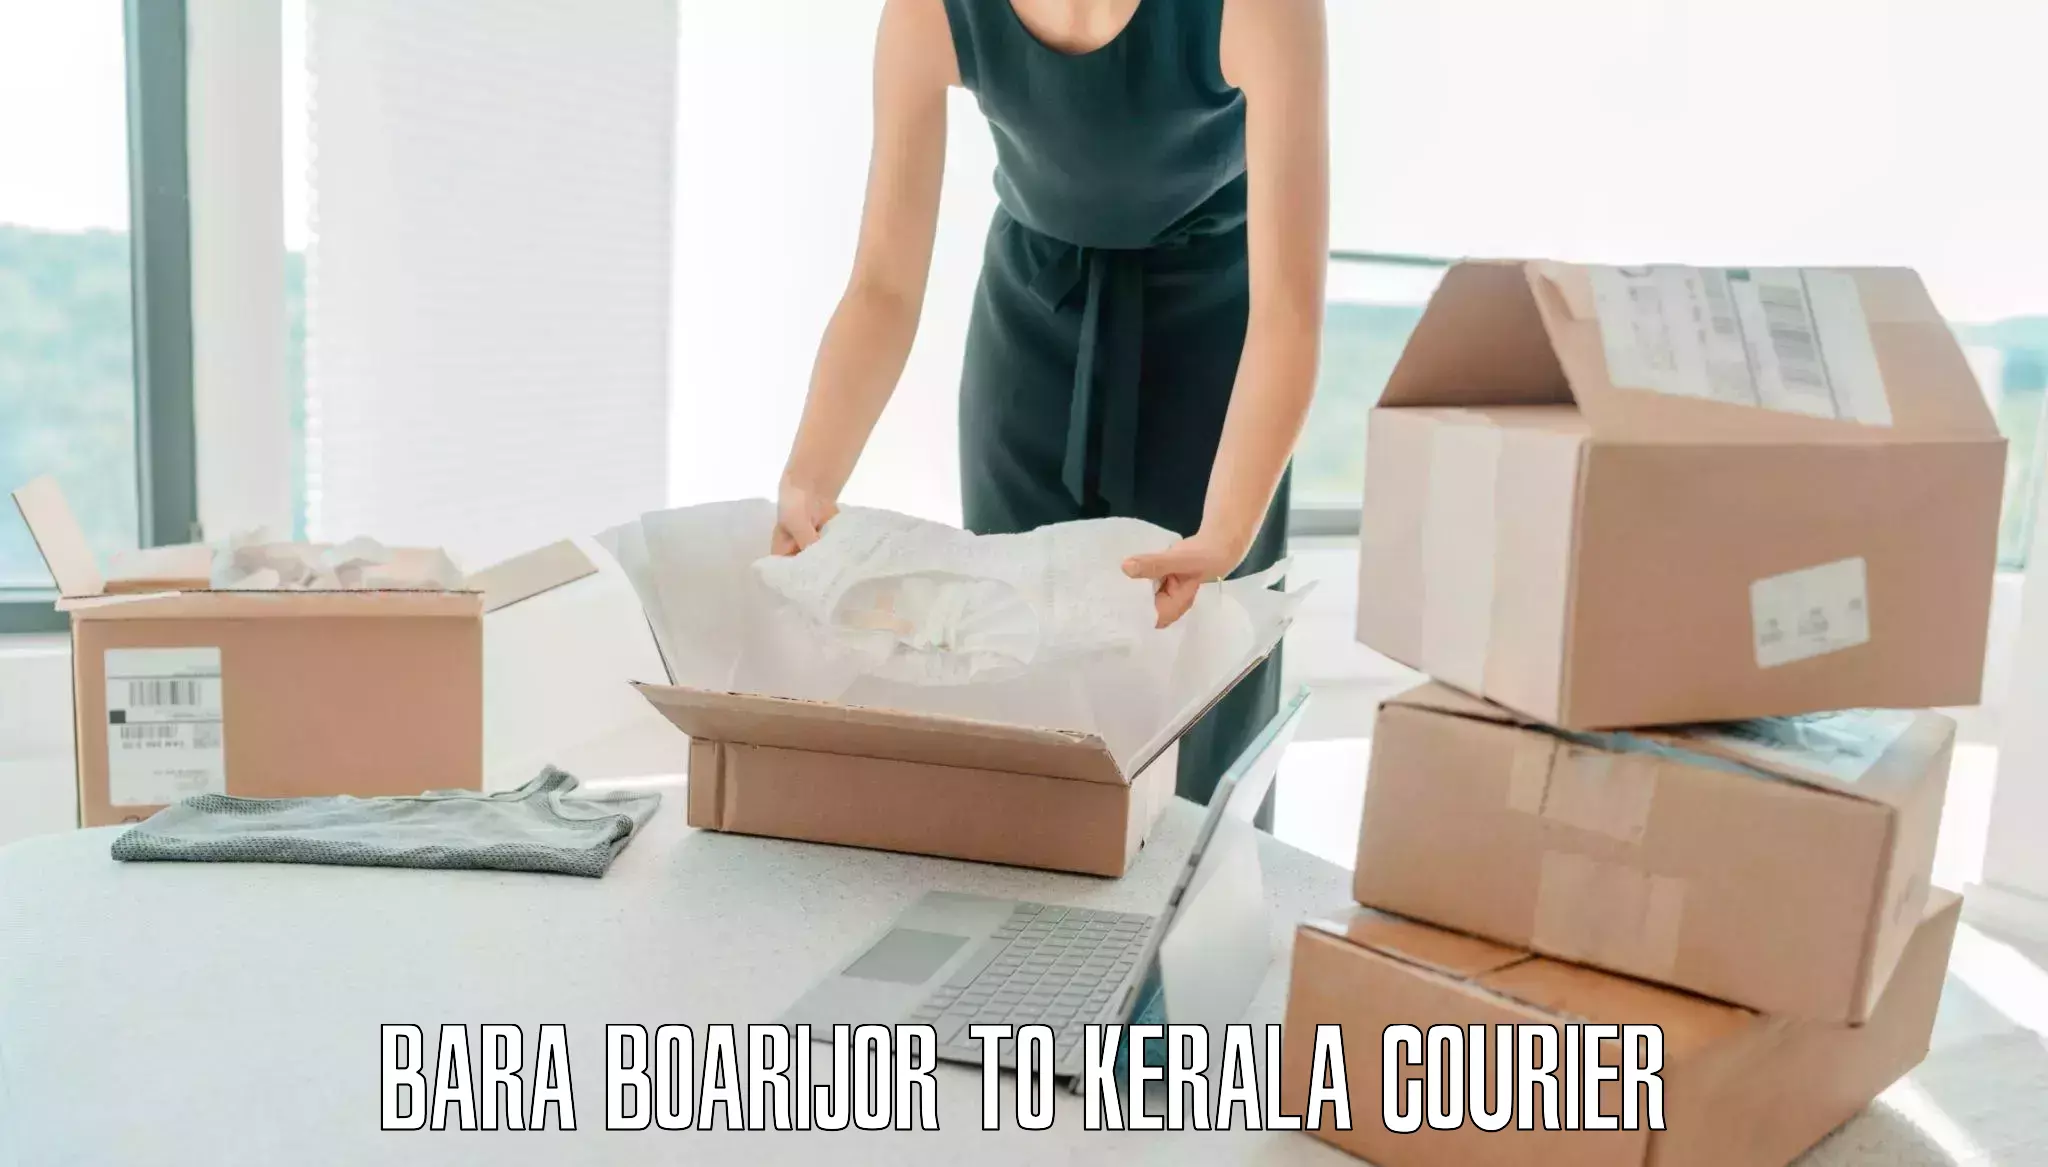 Quick baggage pickup Bara Boarijor to Kerala